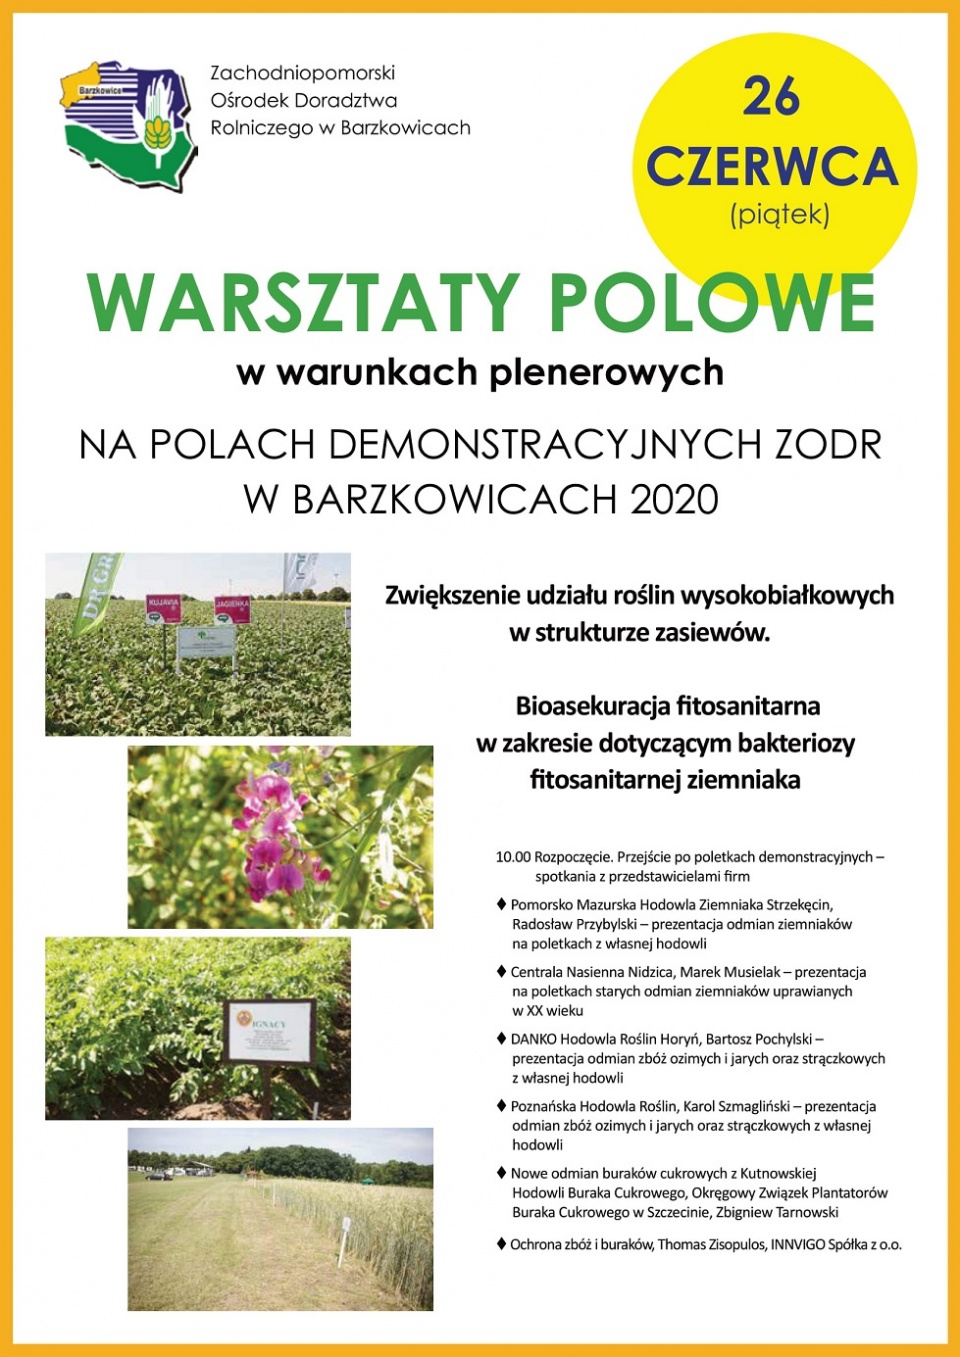 Dni pola w Barzkowicach